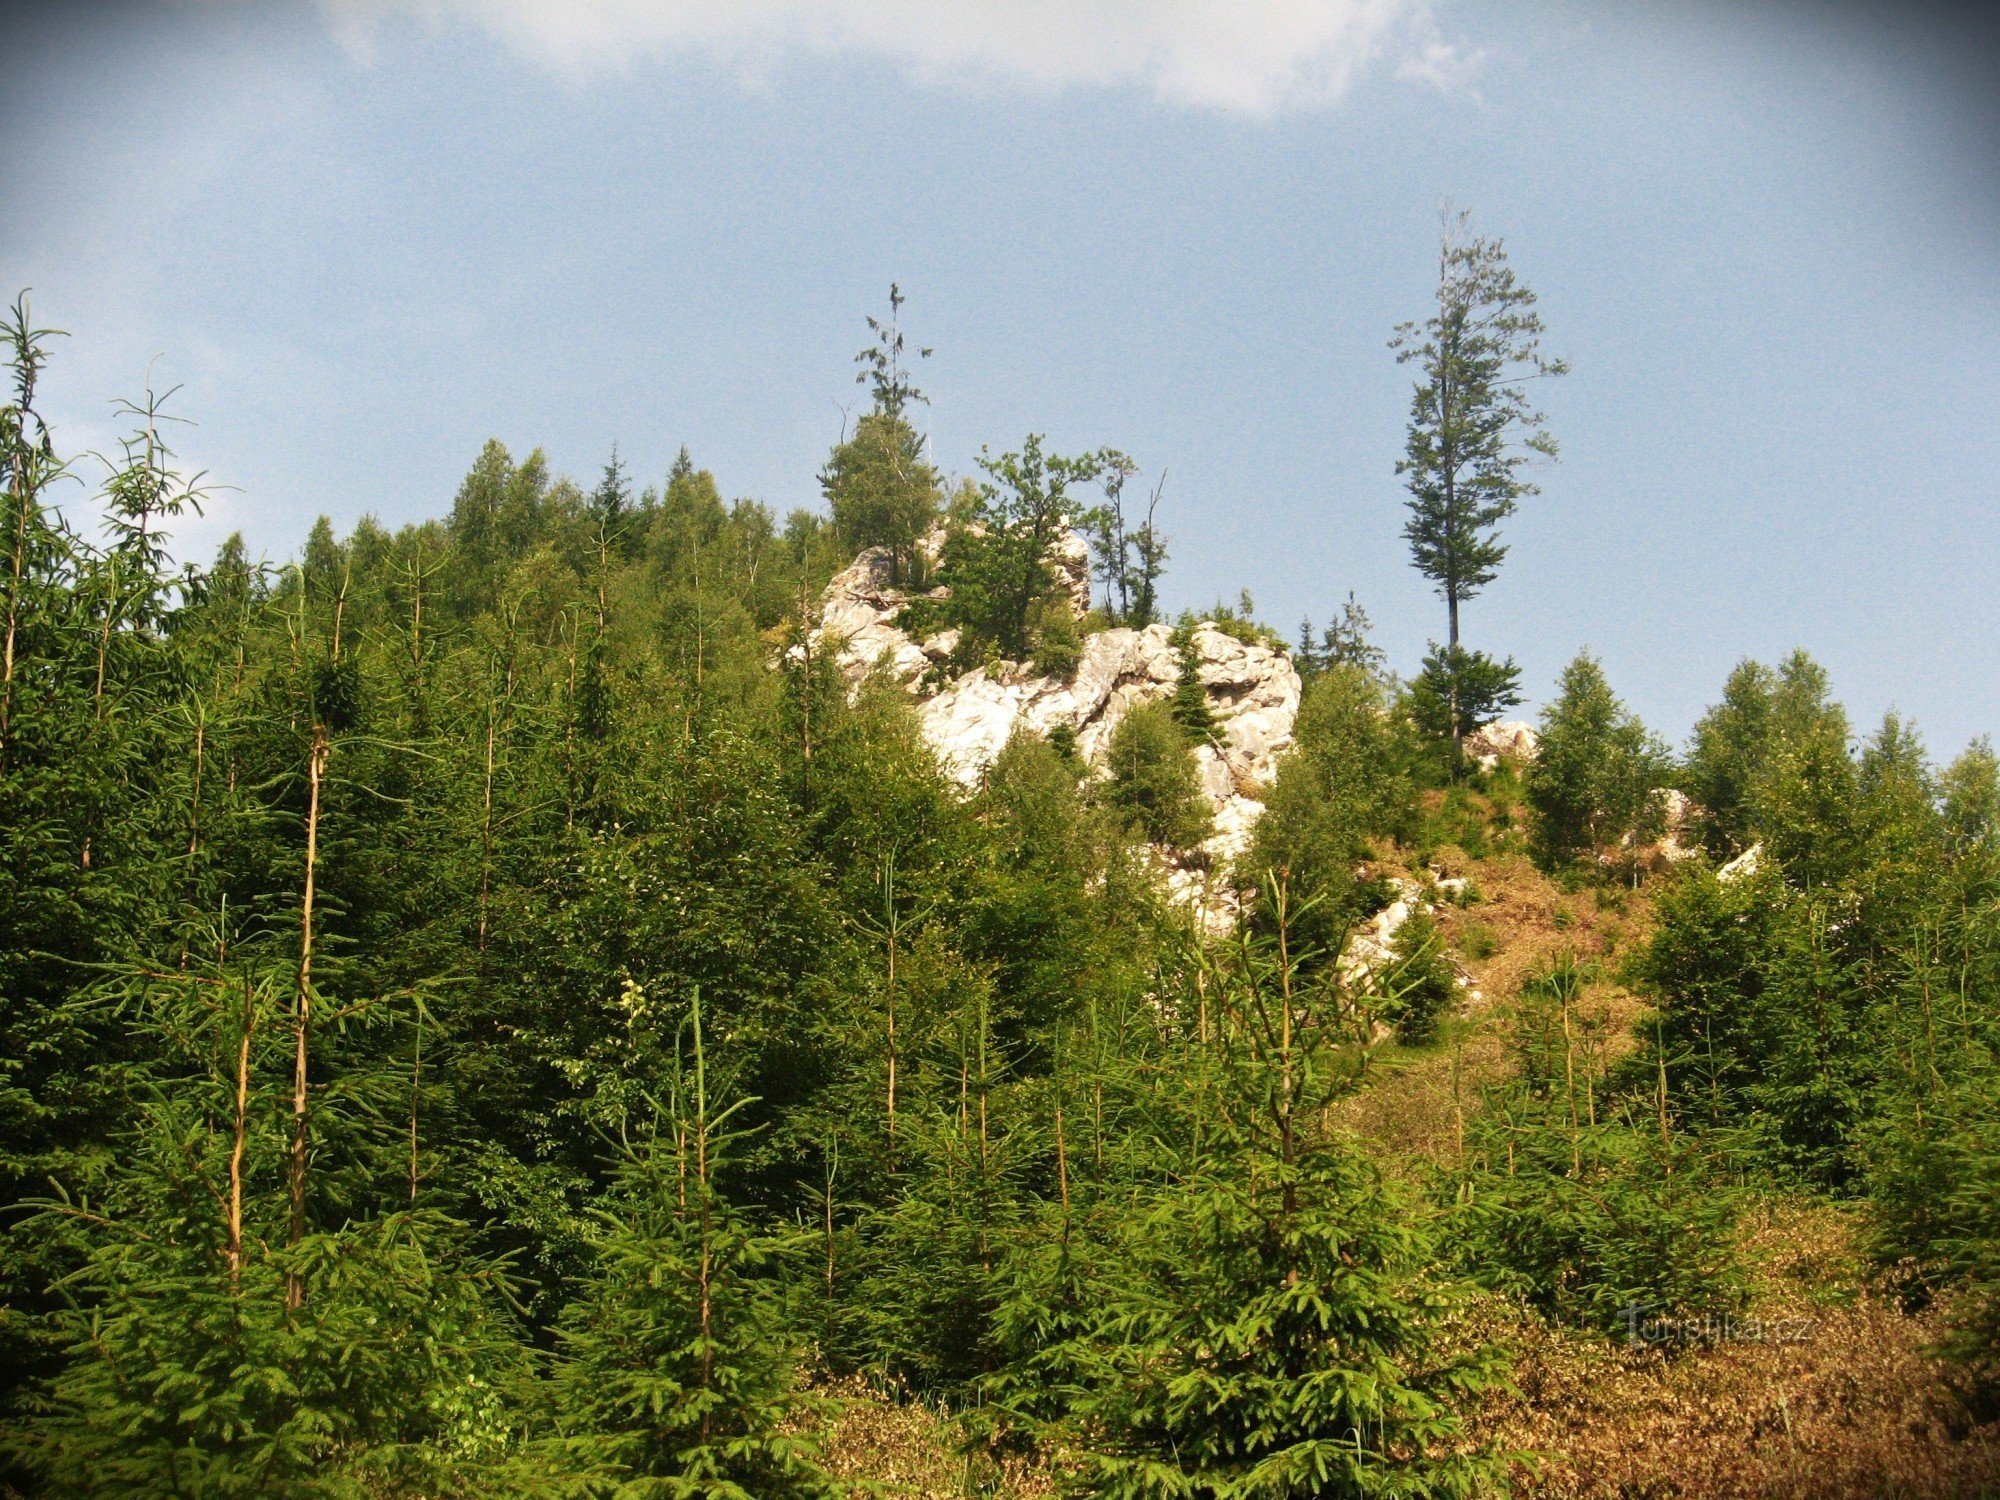 Skály pod Posedem (White Rock) - Jeseníky Mountains